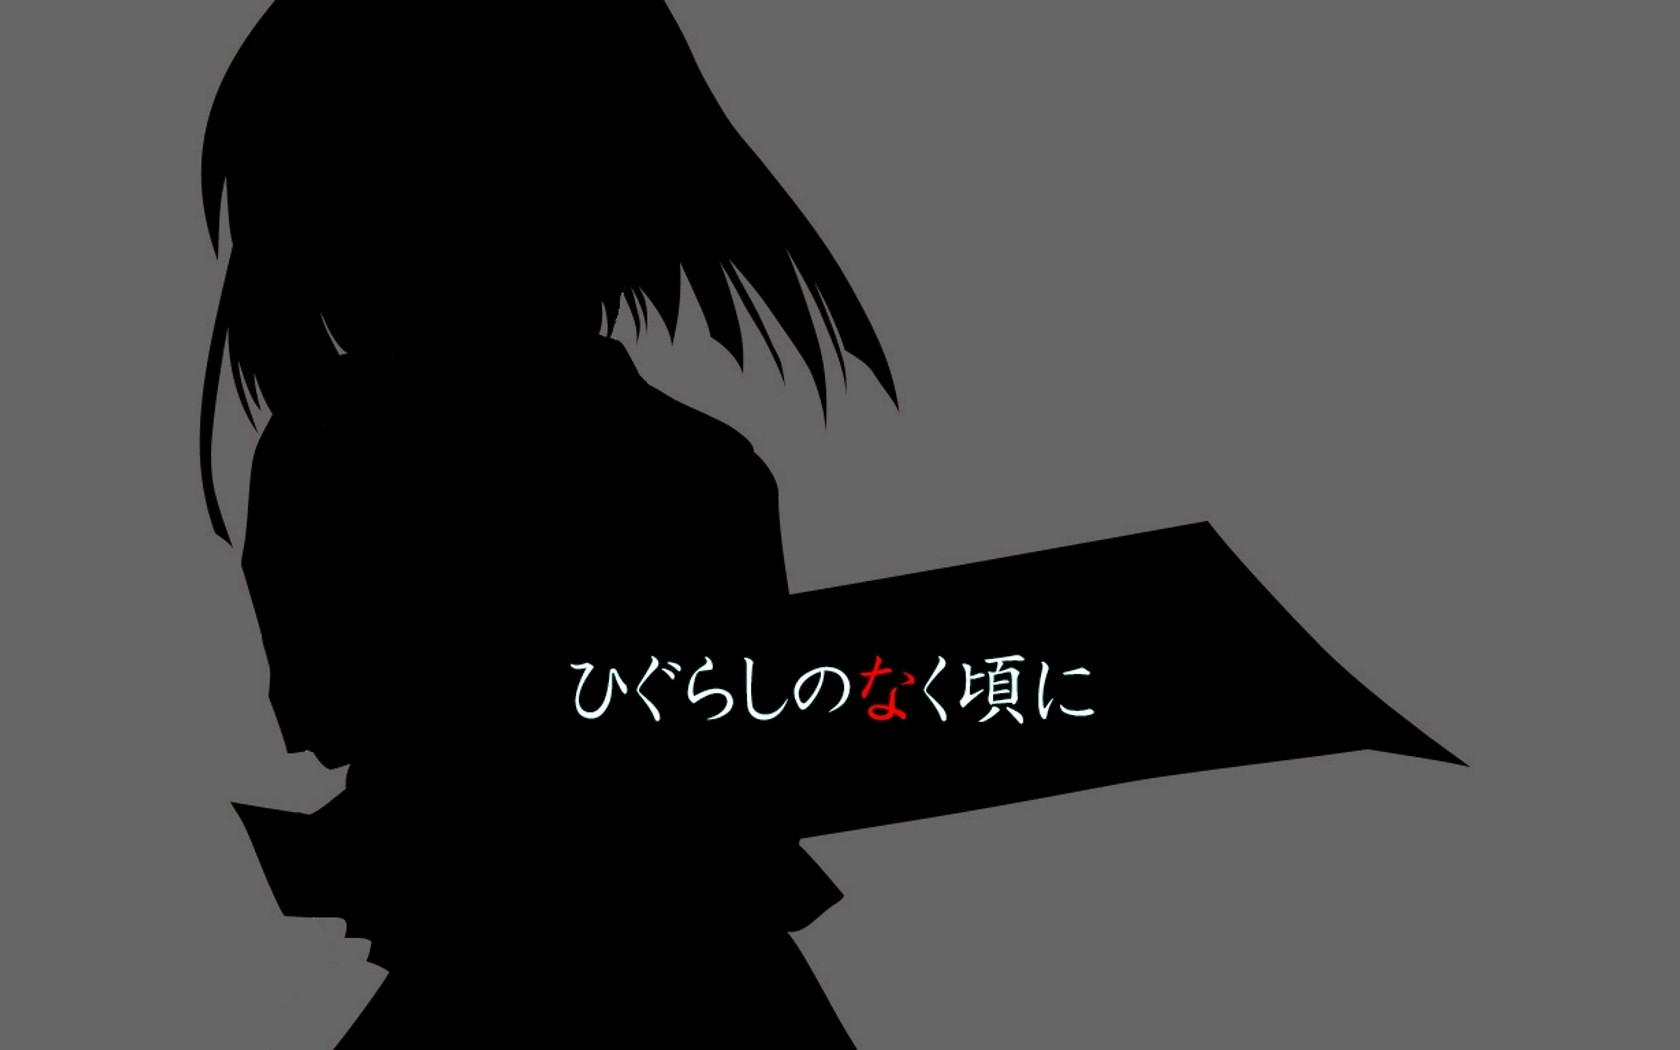 Higurashi No Naku Koro Ni Ryuuguu Reina Anime Girls Silhouette Anime Simple Background 1680x1050